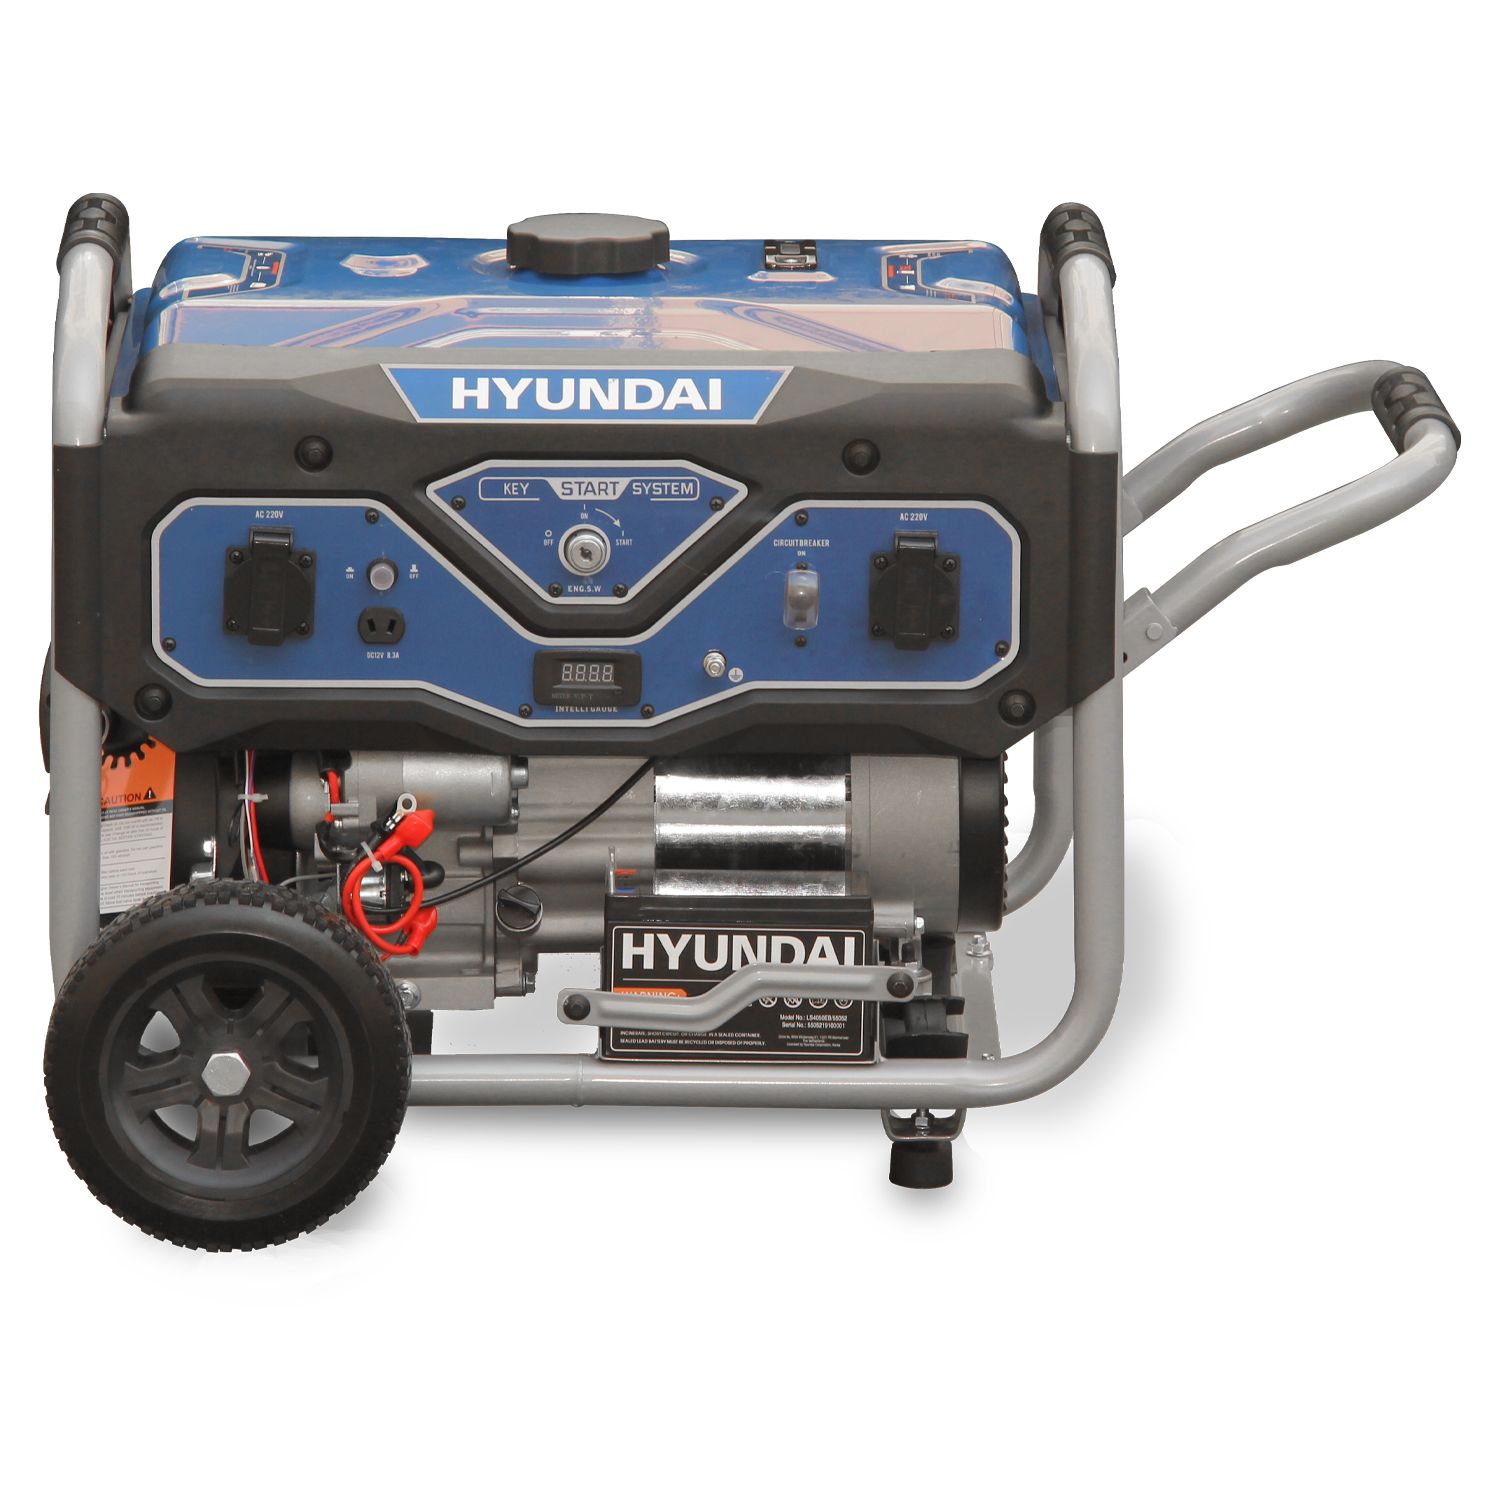 Hyundai generator 3kW - 7PK - Elektrische start